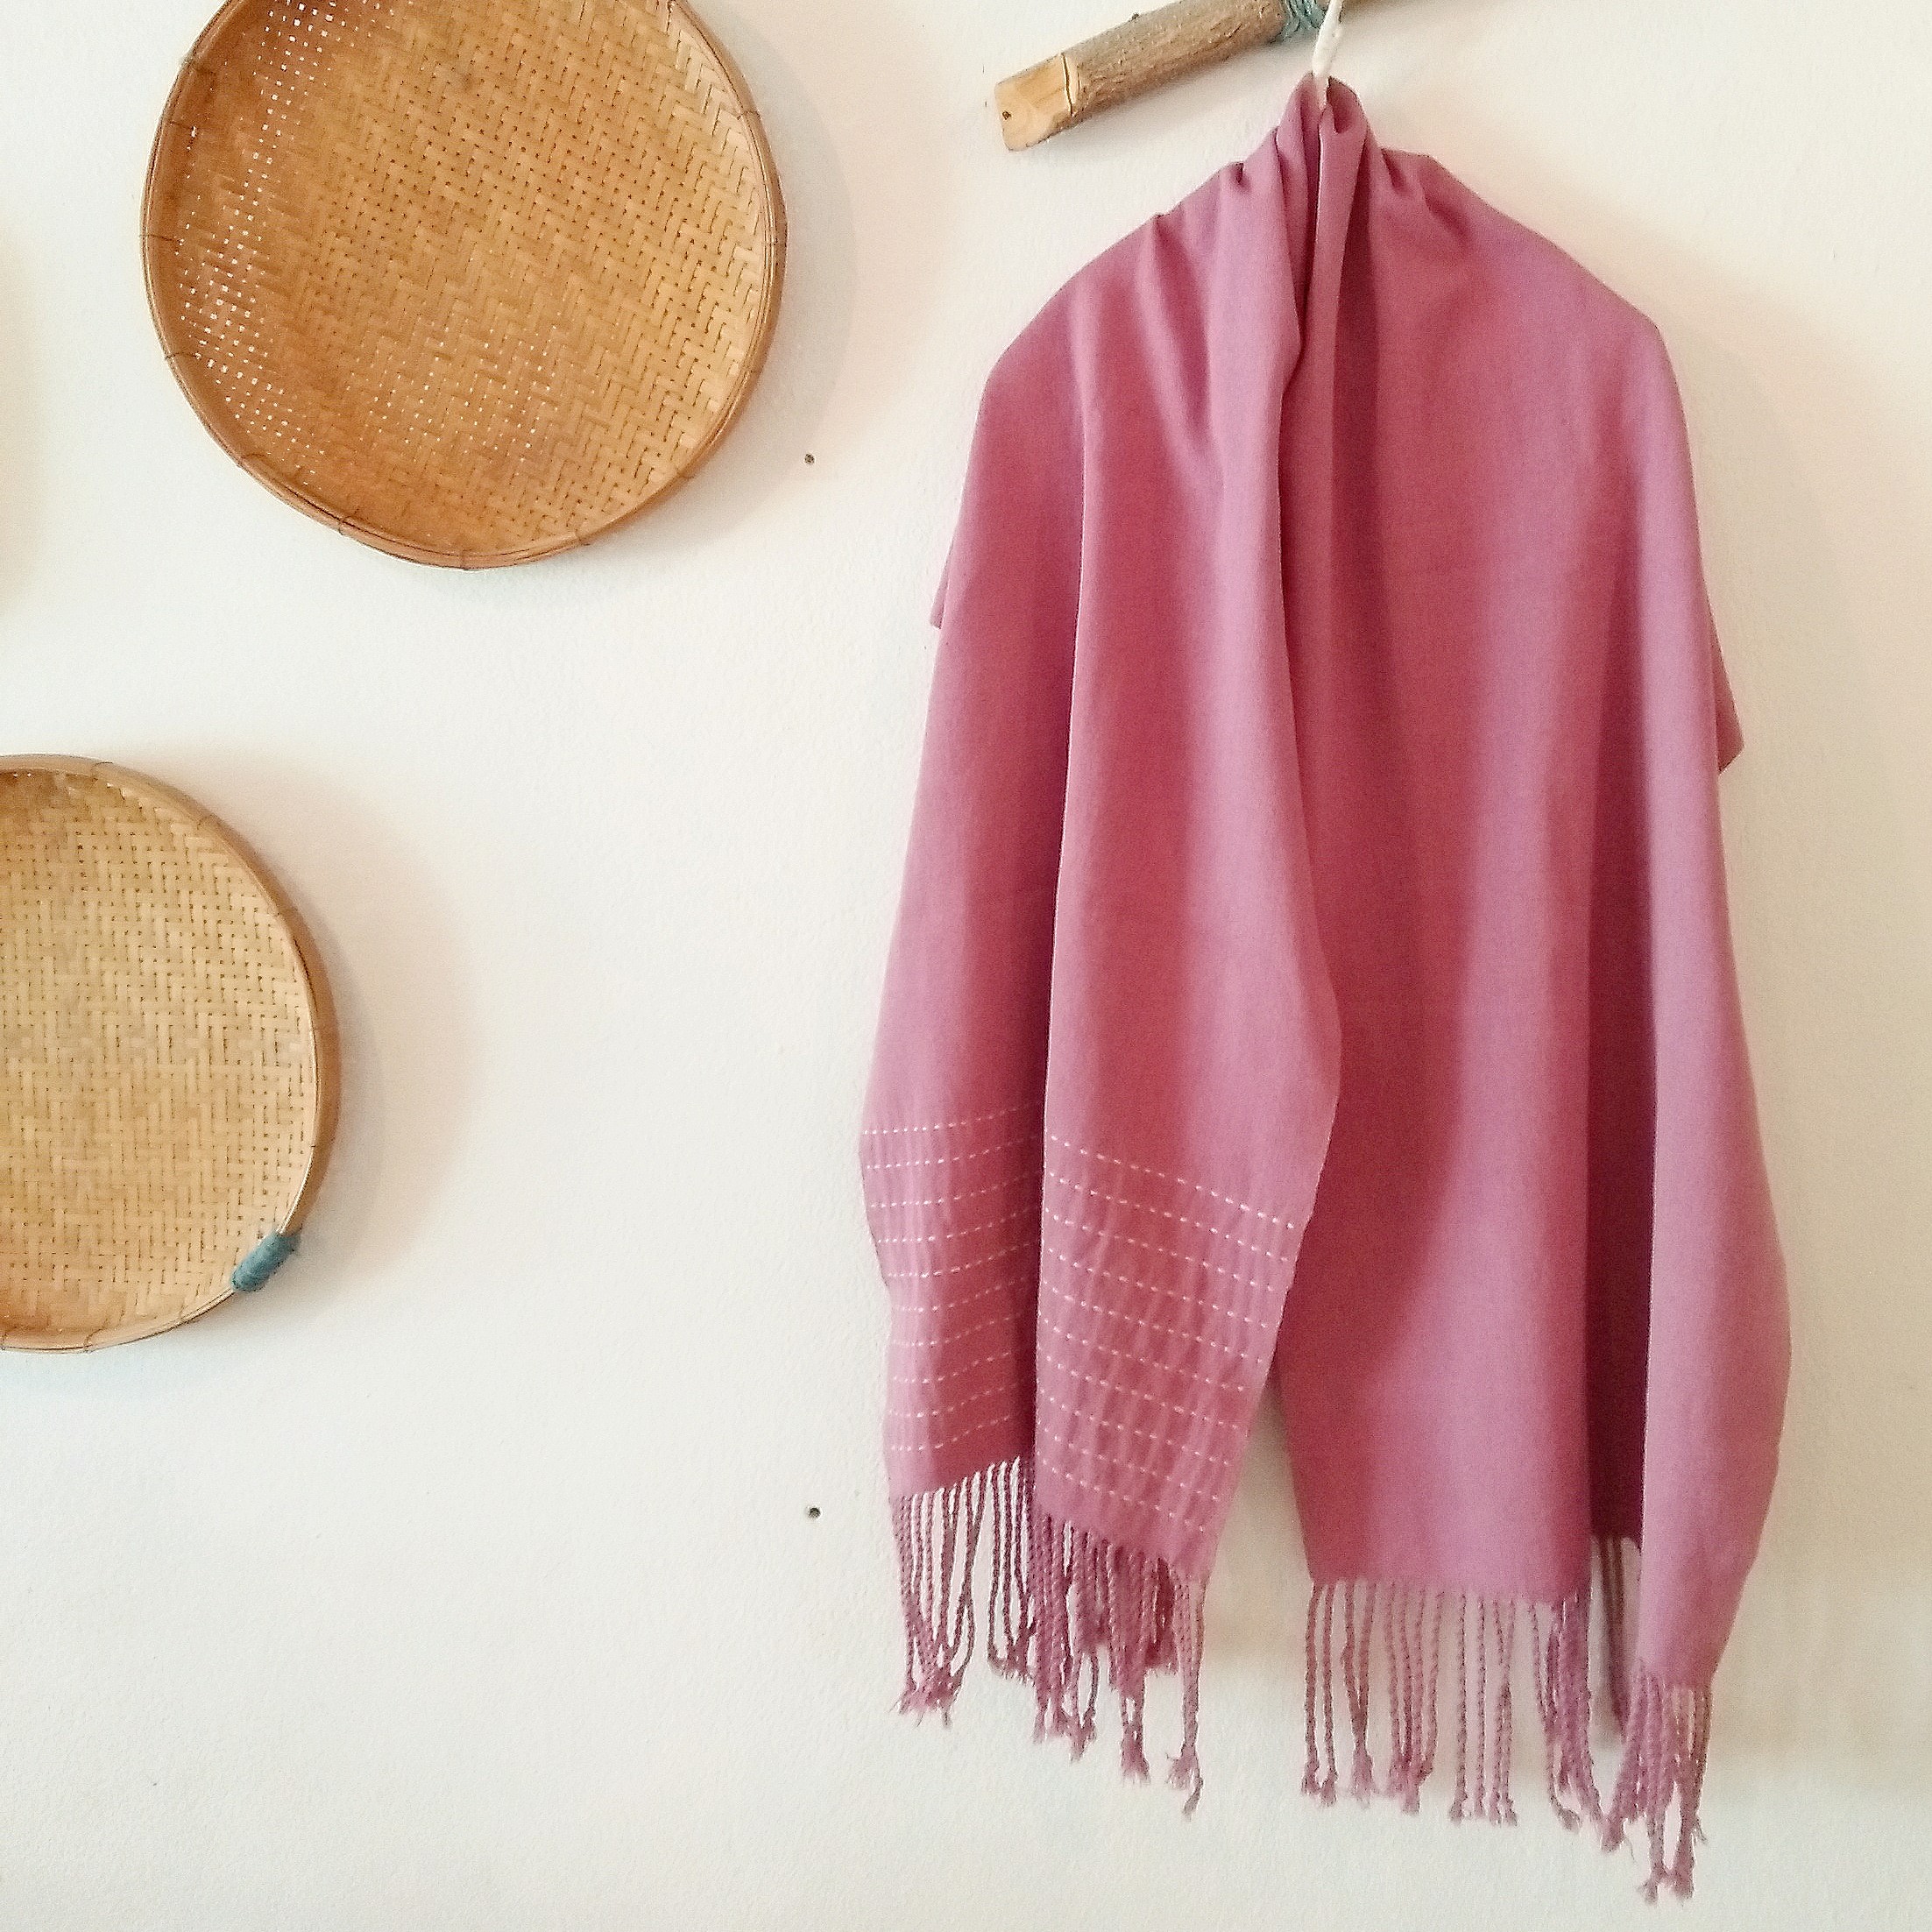 セール価格 タイの手織りちくちくストール 草木染め ピンク 164cm Iichi ハンドメイド クラフト作品 手仕事品の通販